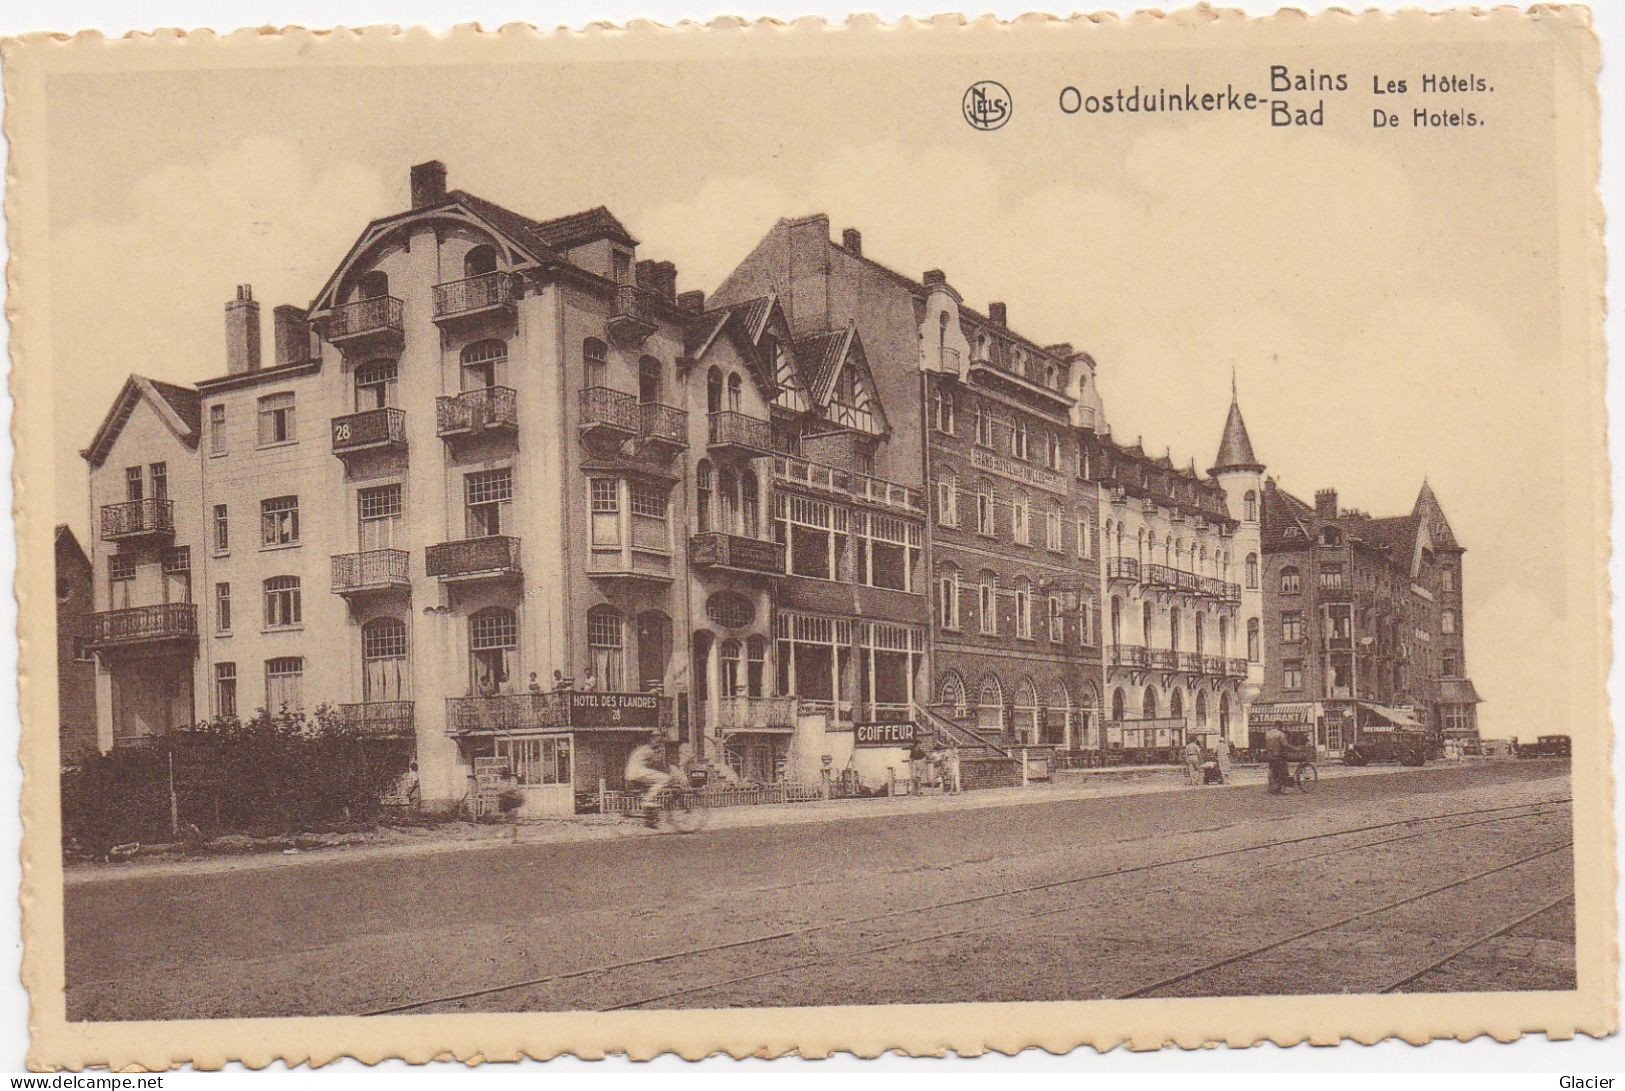 Oostduinkerke - Bains - Bad - Les Hôtels - De Hotels - Oostduinkerke